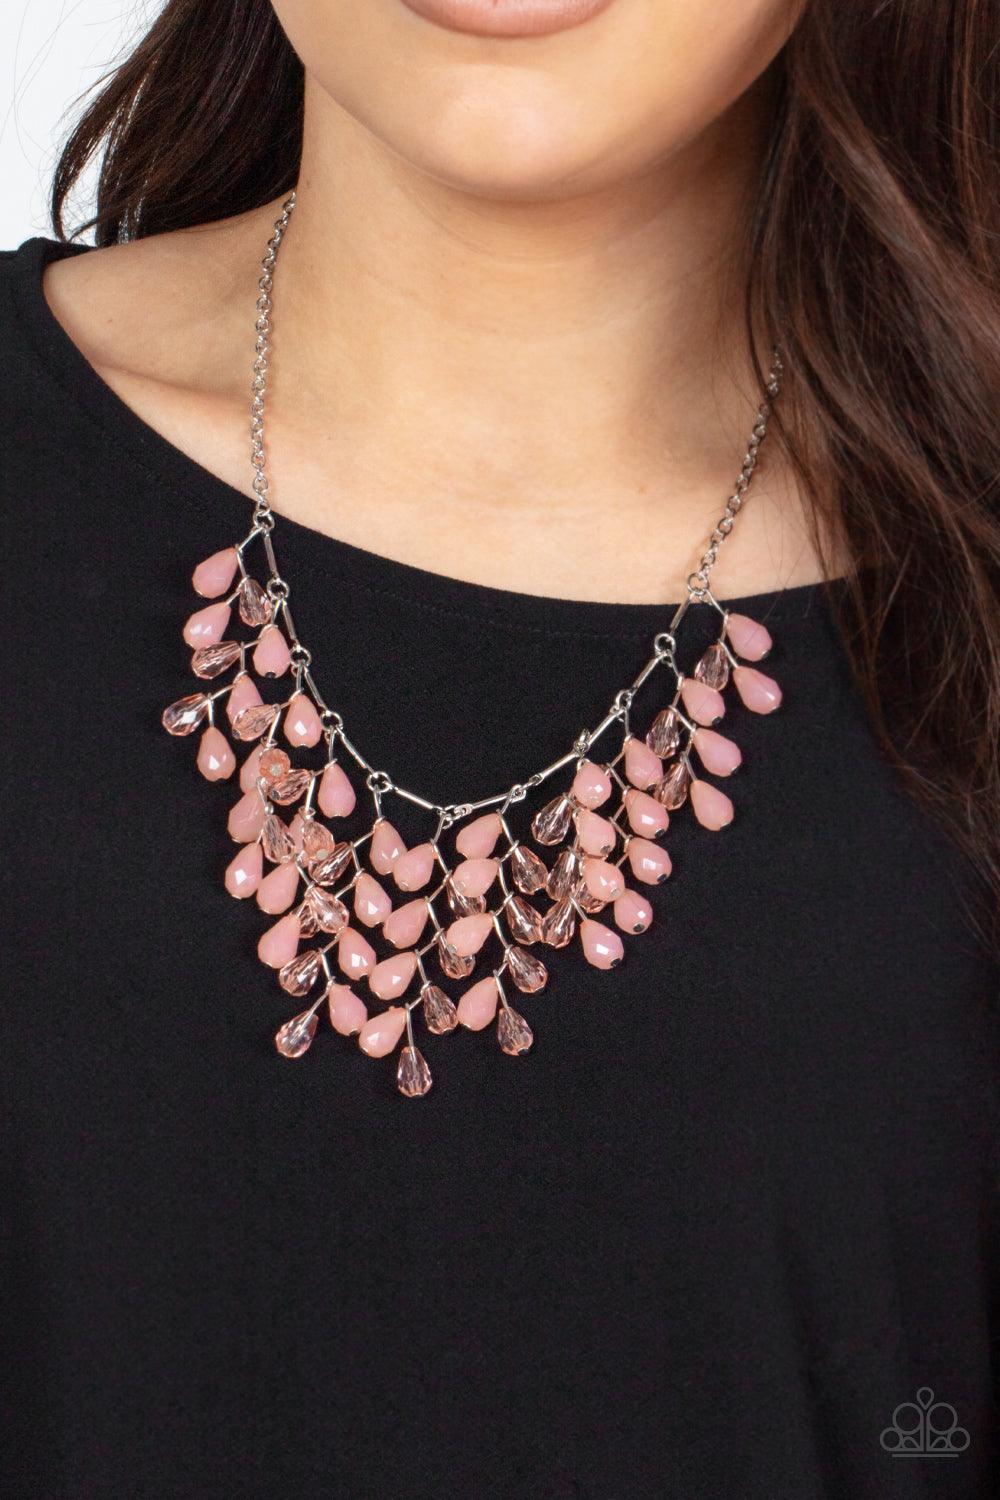 Garden Fairytale Pink Necklace - Jewelry by Bretta